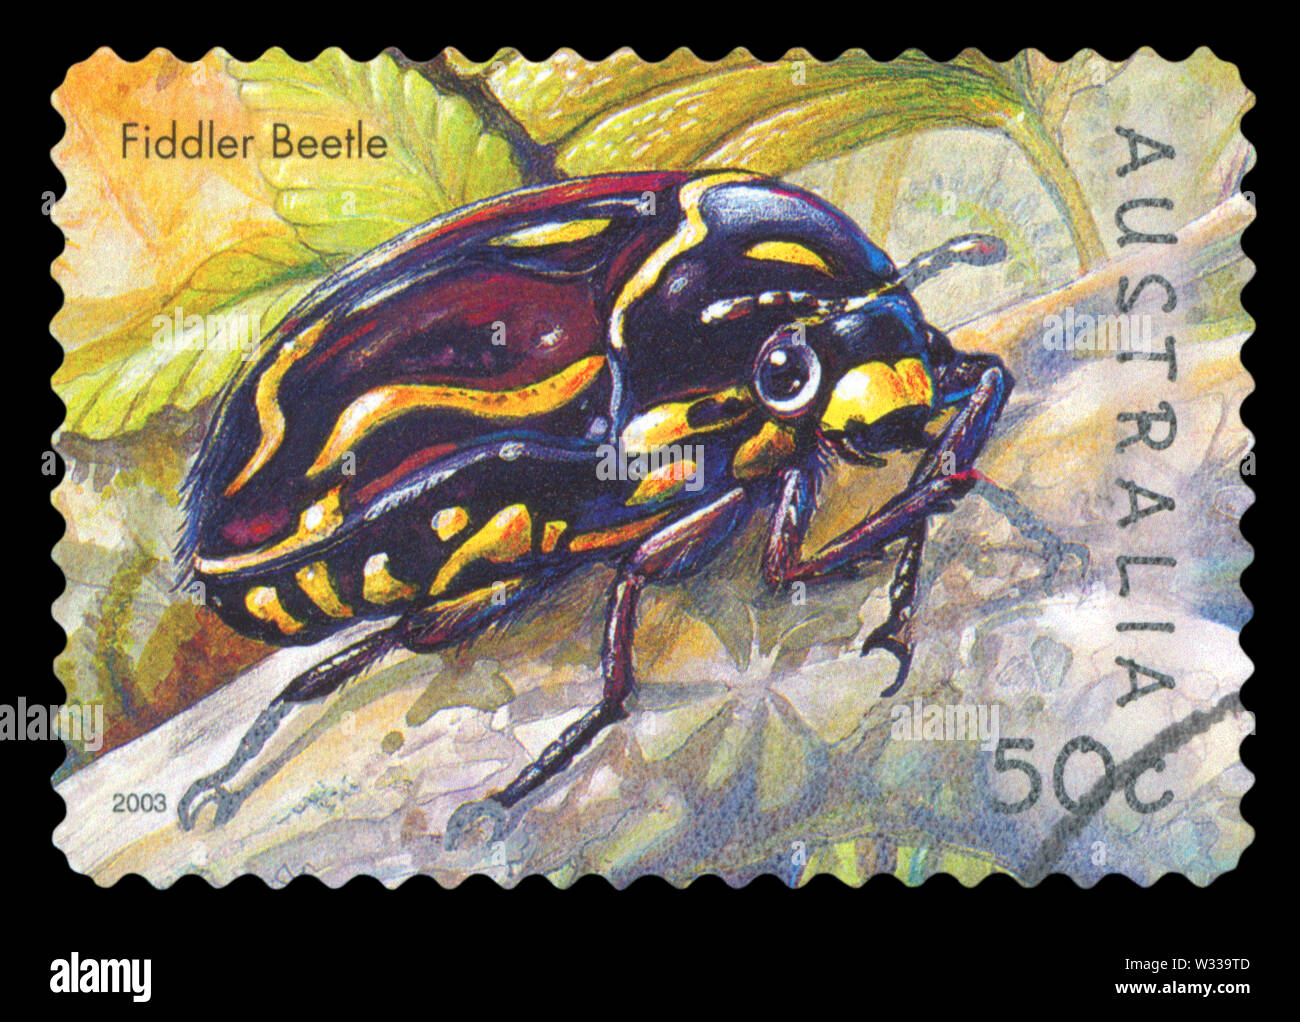 AUSTRALIA - circa 2003: utiliza una estampilla postal de Australia, mostrando una ilustración de un Escarabajo Fiddler, circa 2003. Foto de stock